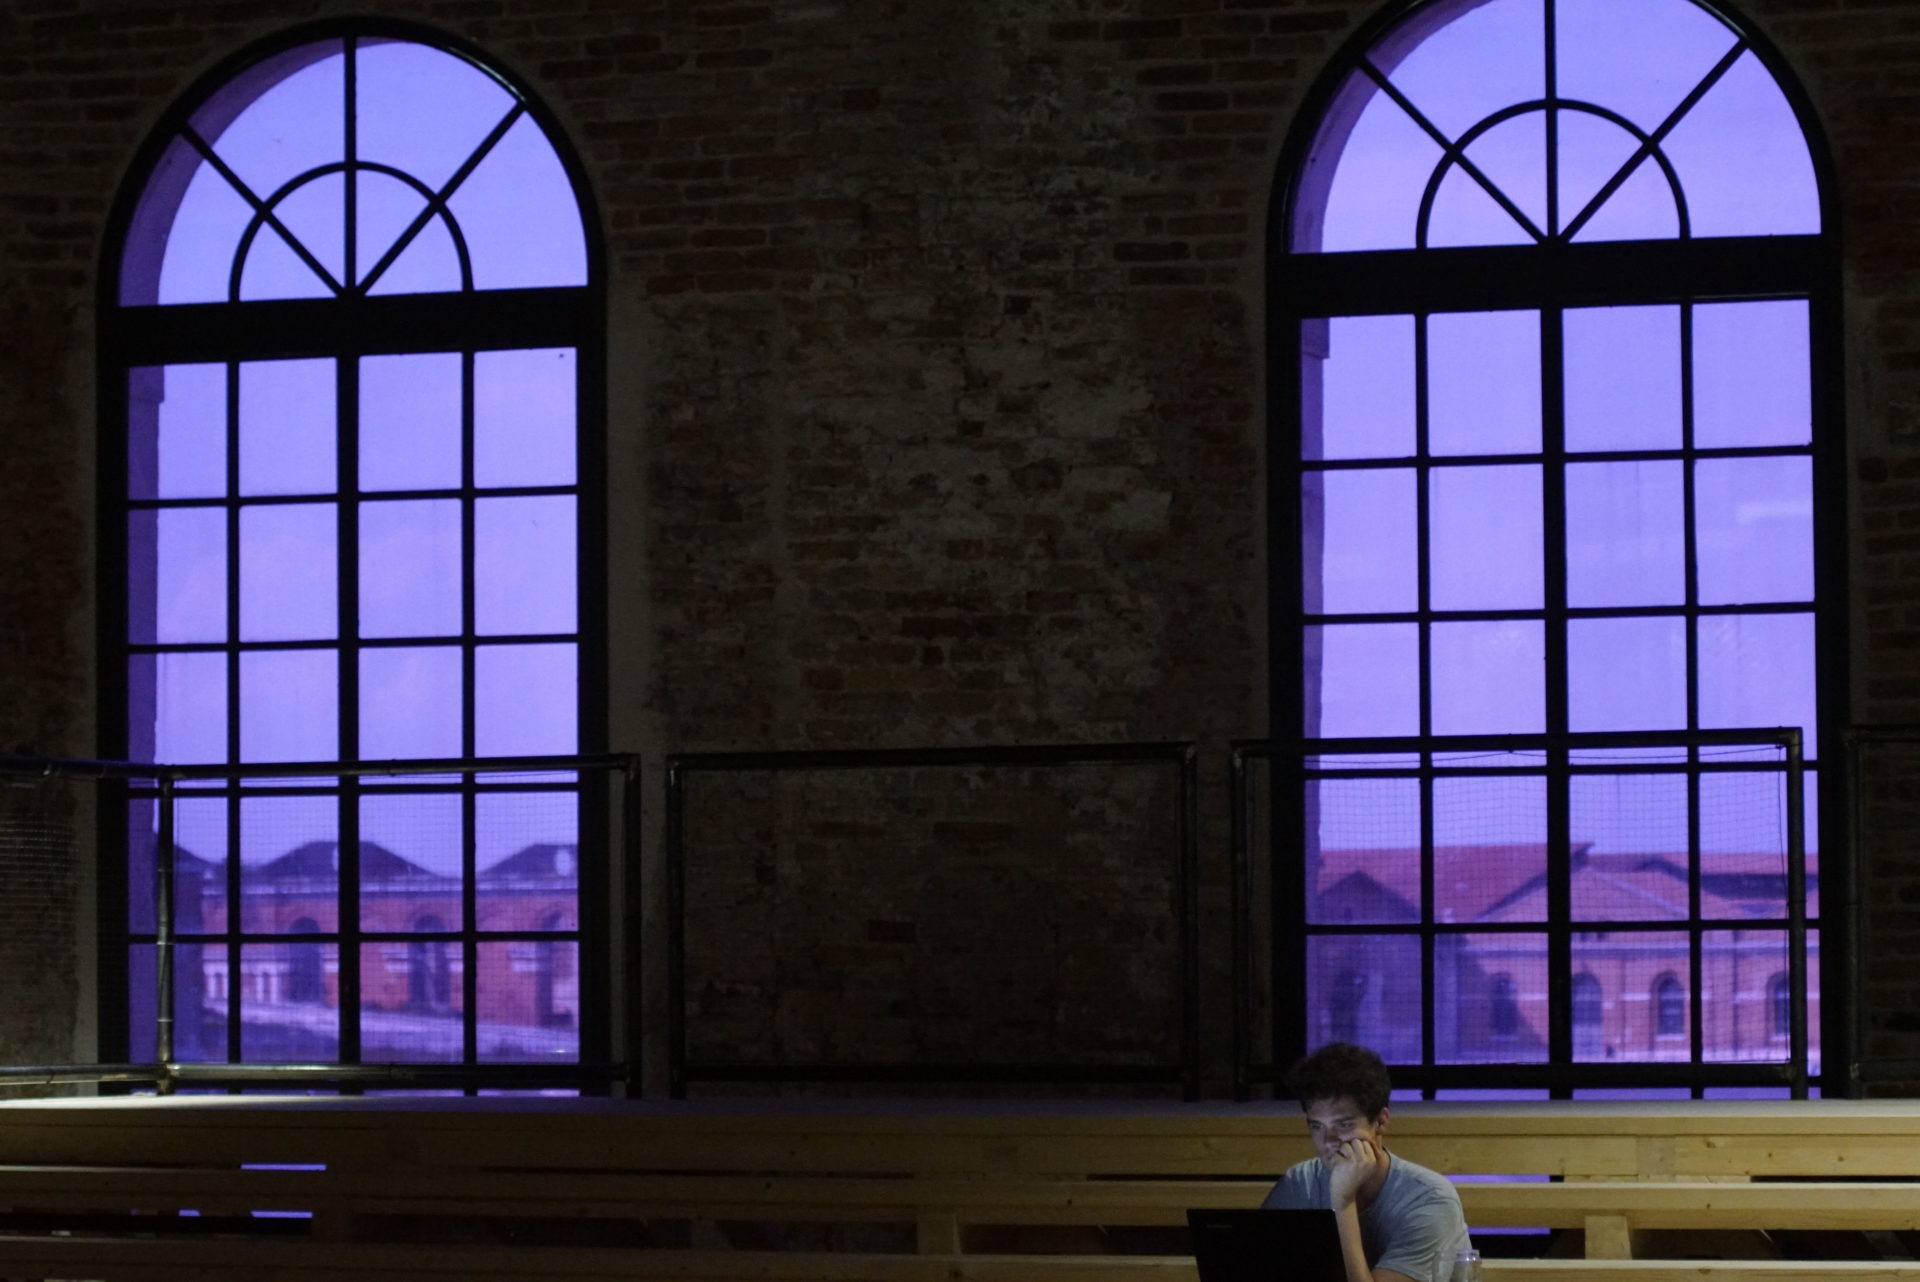 Zwei große lila Rundbogenfenster durch die man Teile des Arsenals von Venedig sieht. Im Vordeergrund sind lange helle Tische zu sehen an denen ein Mann in einen Laptop Blickt